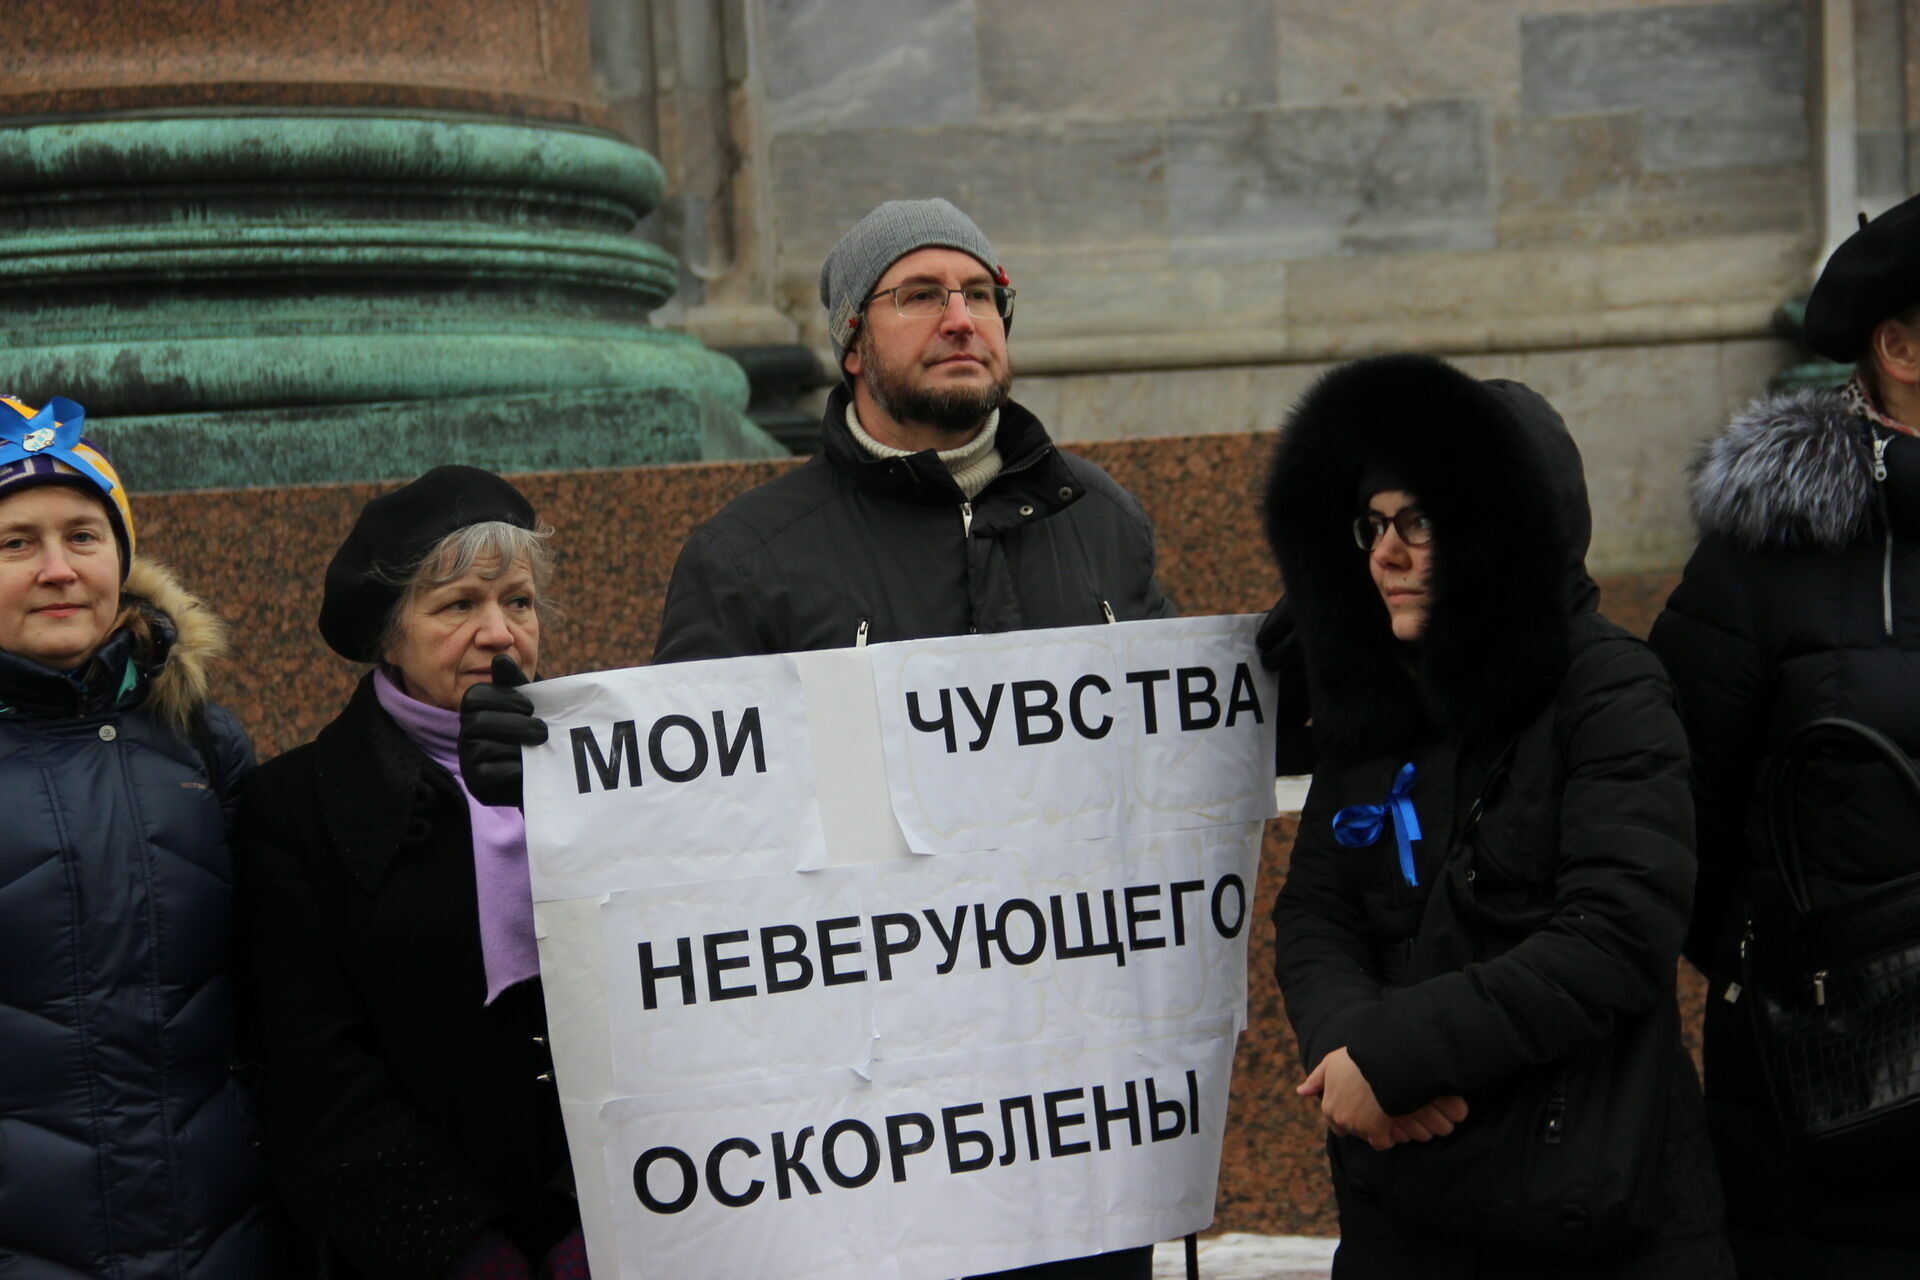 Не верю! Религиозность москвичей в последние годы неуклонно снижается